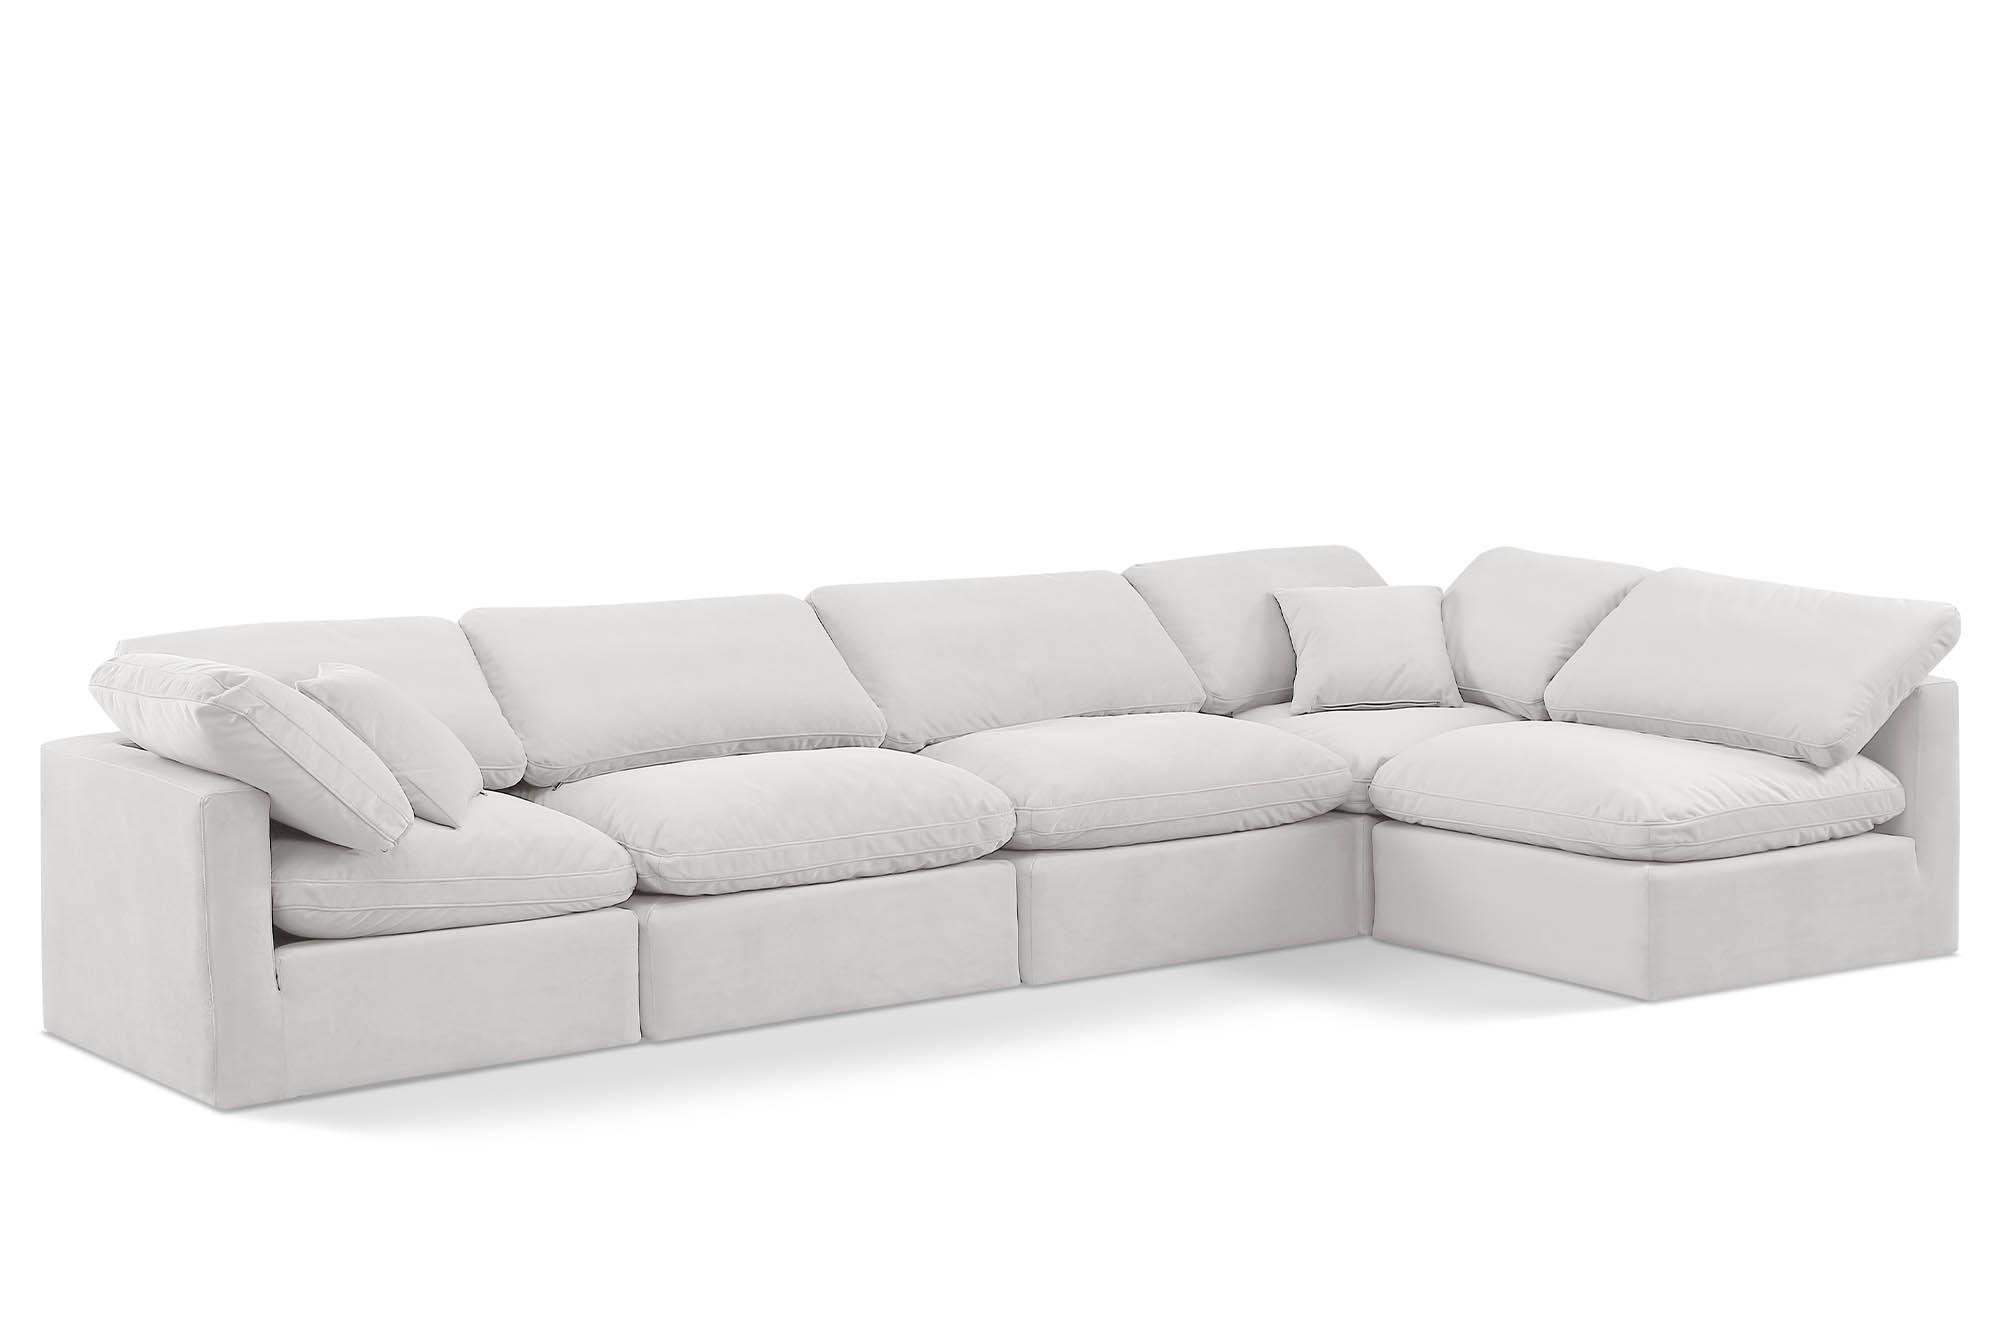 Contemporary, Modern Modular Sectional Sofa INDULGE 147Cream-Sec5D 147Cream-Sec5D in Cream Velvet